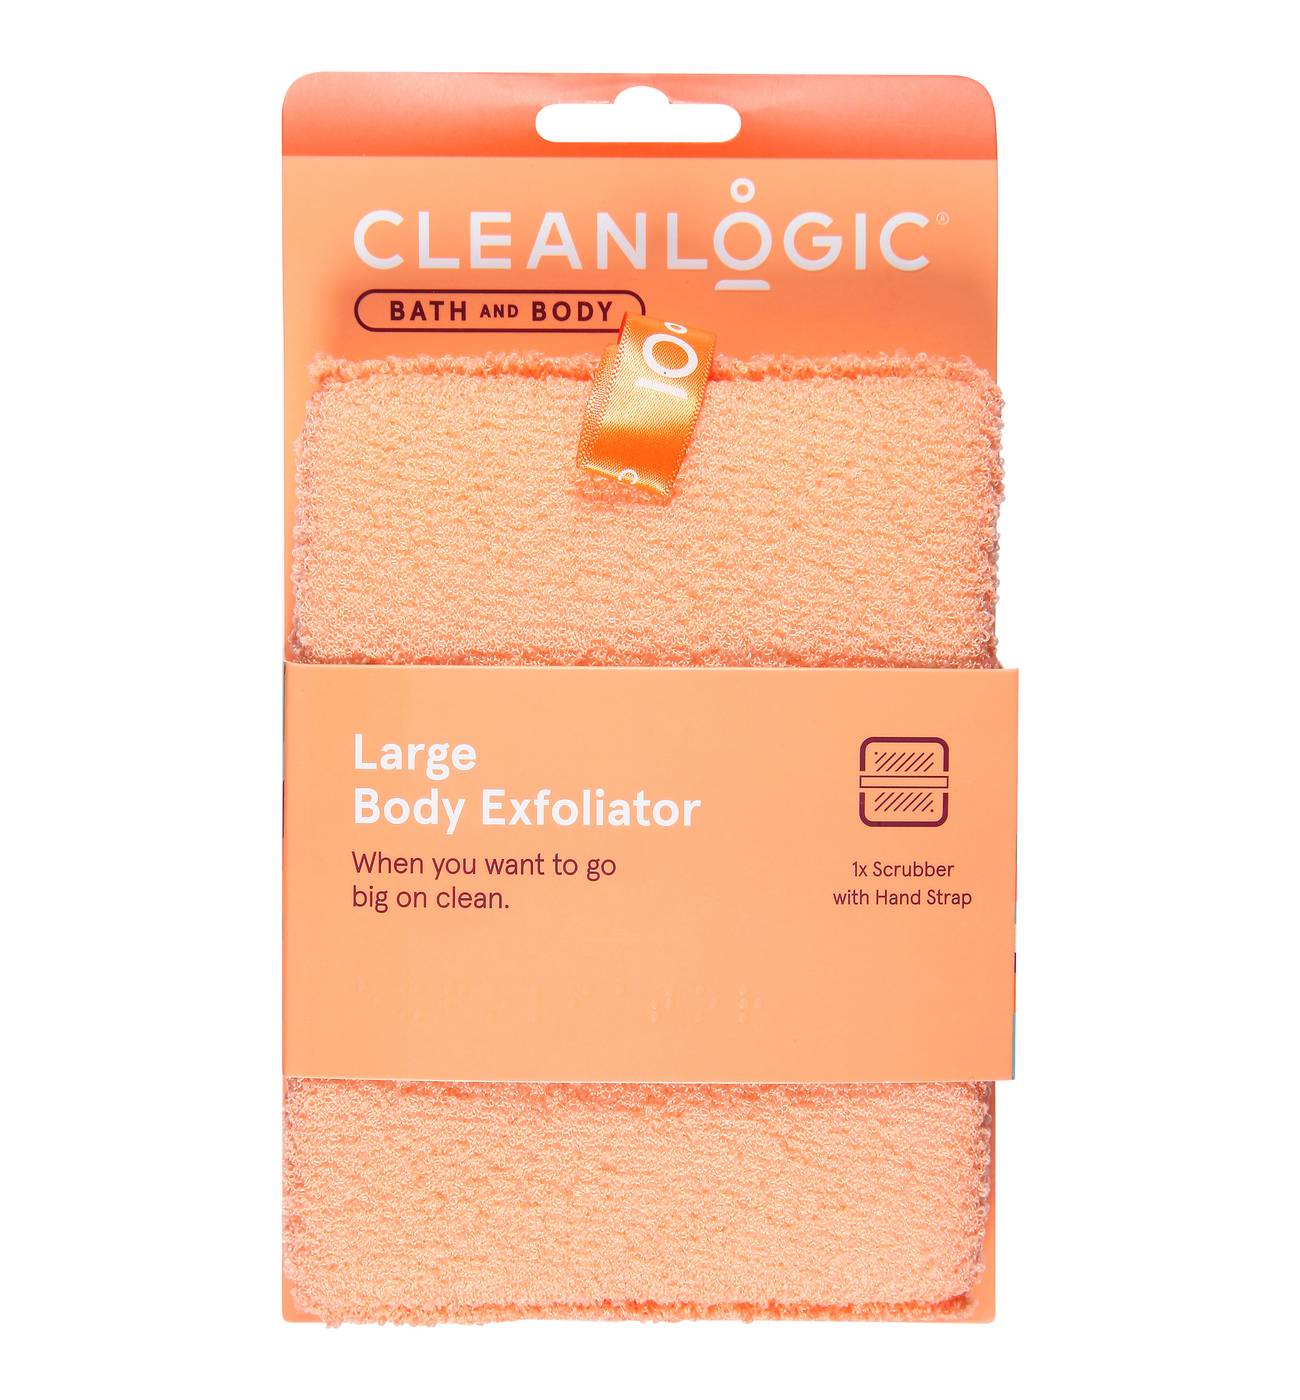 Cleanlogic Large Body Exfoliator; image 1 of 2